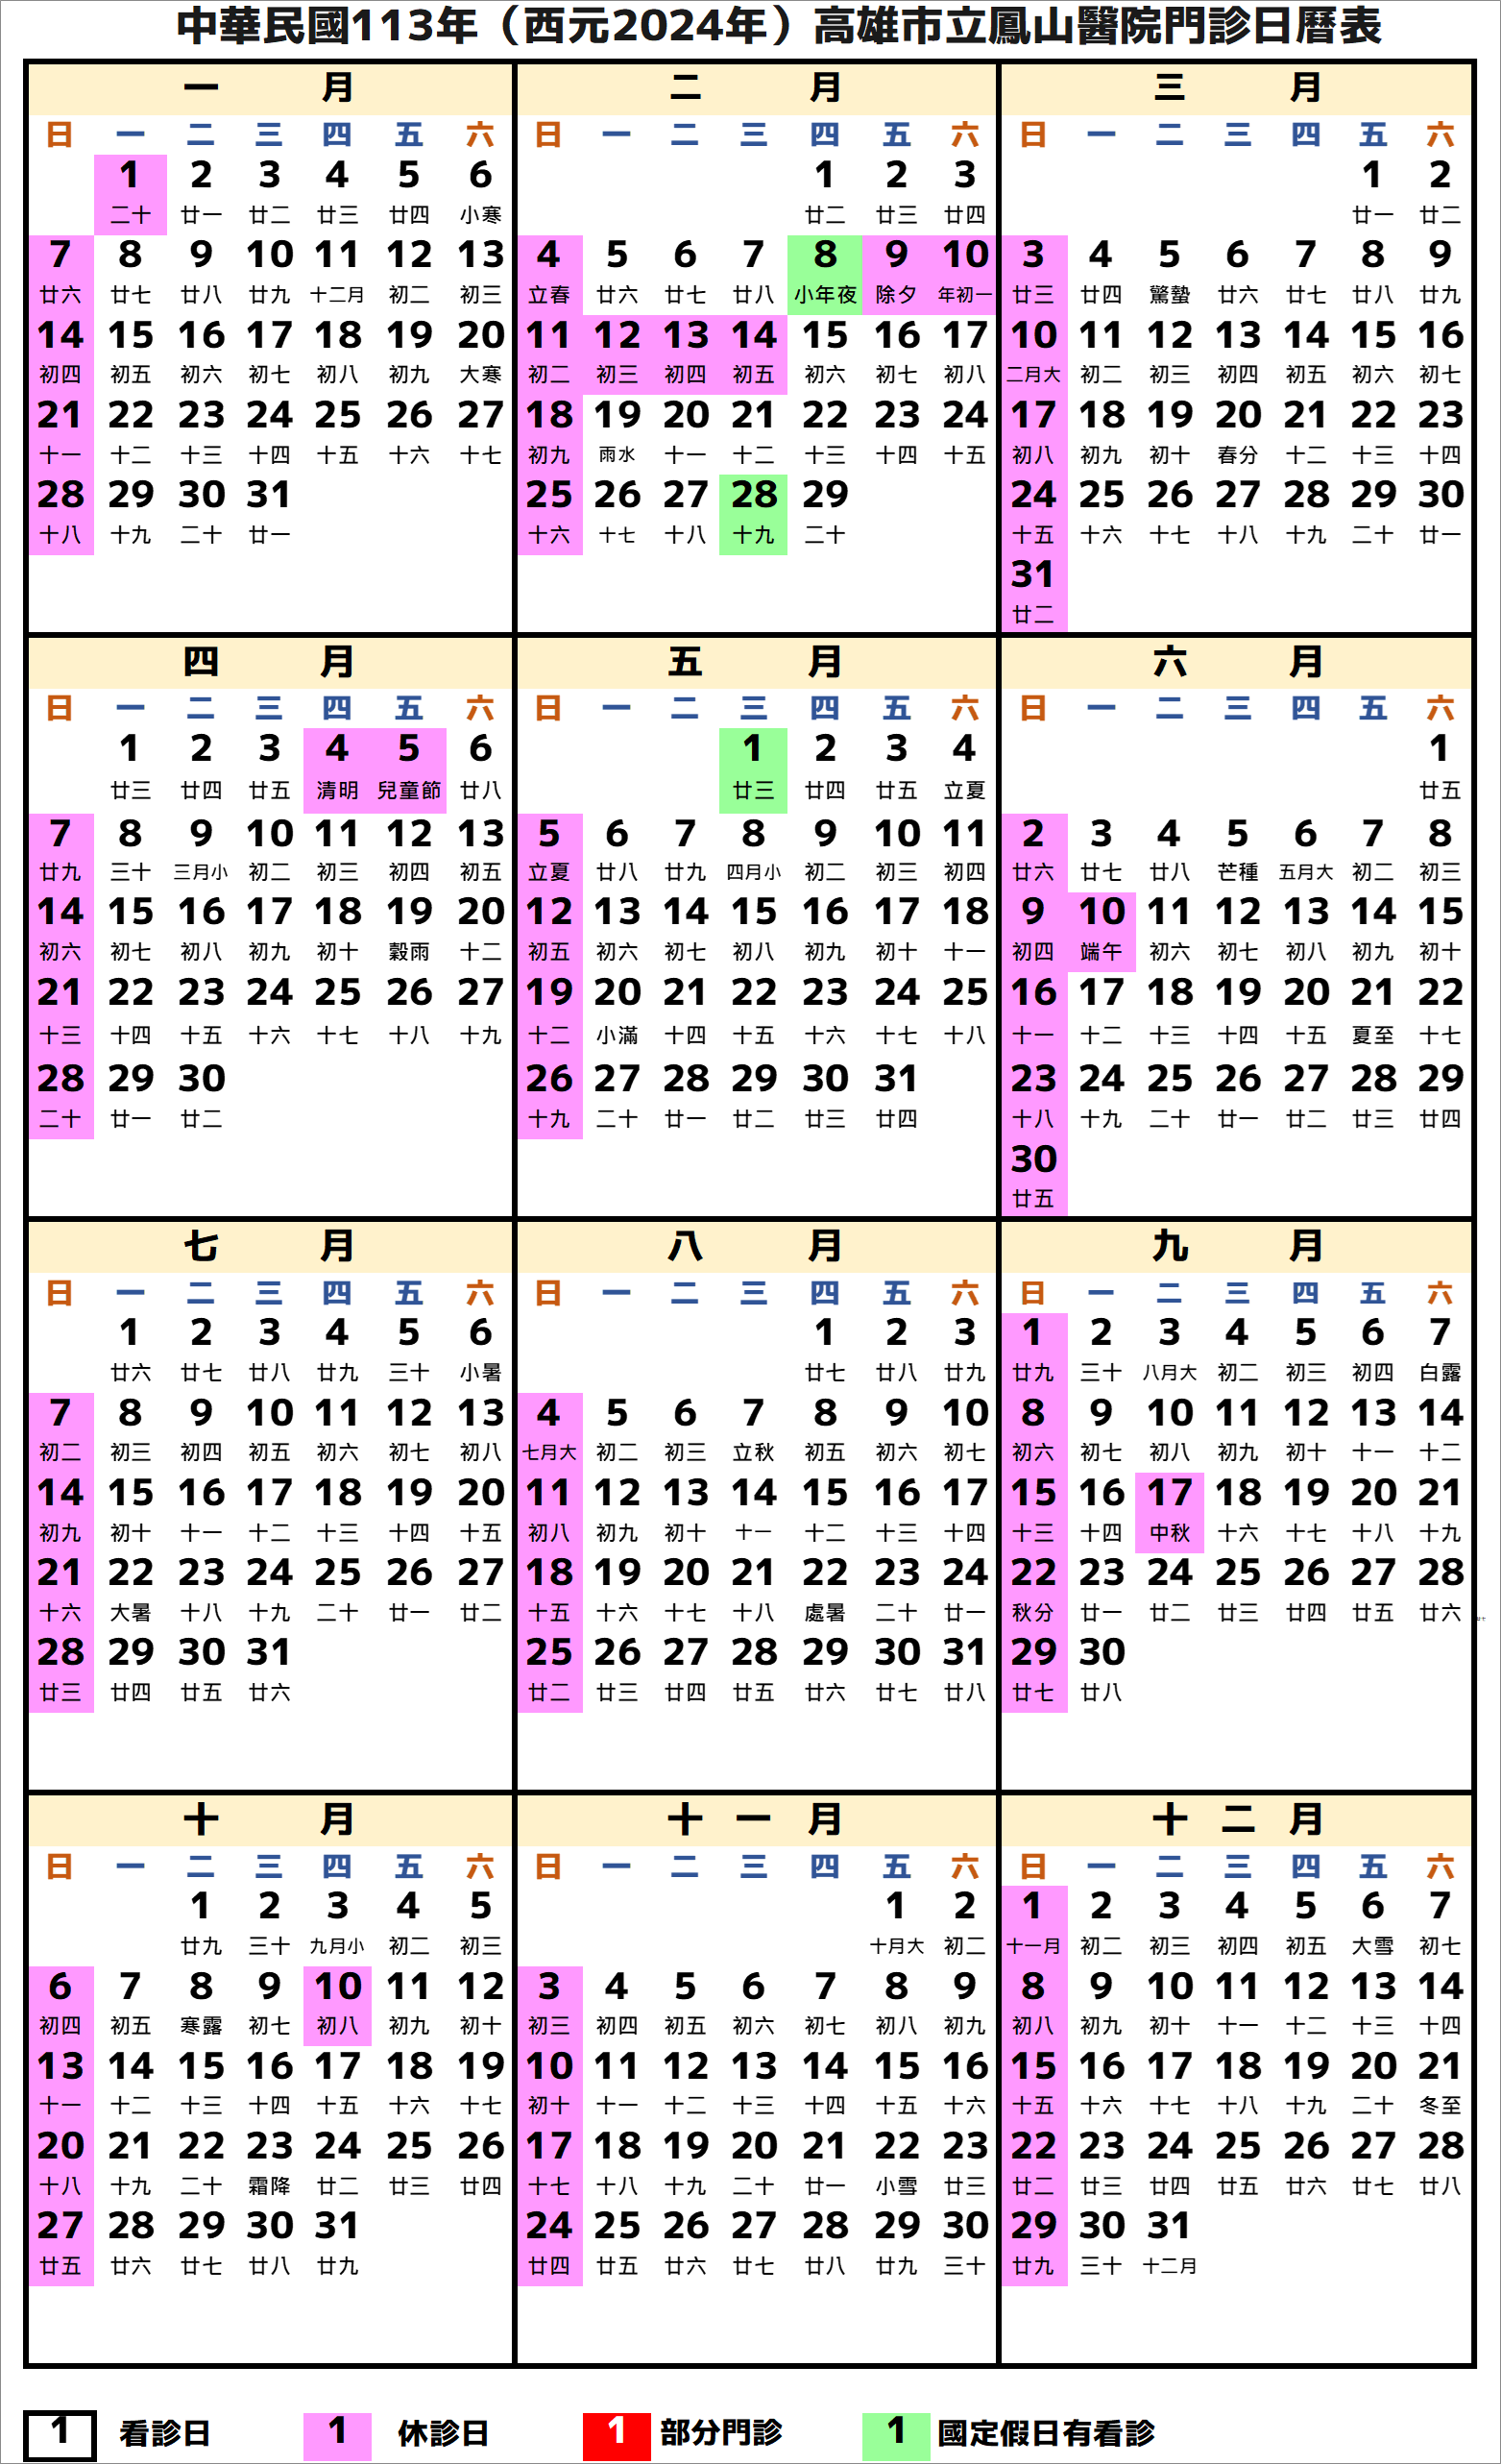 高雄市立鳳山醫院行事曆2024年-民國113年